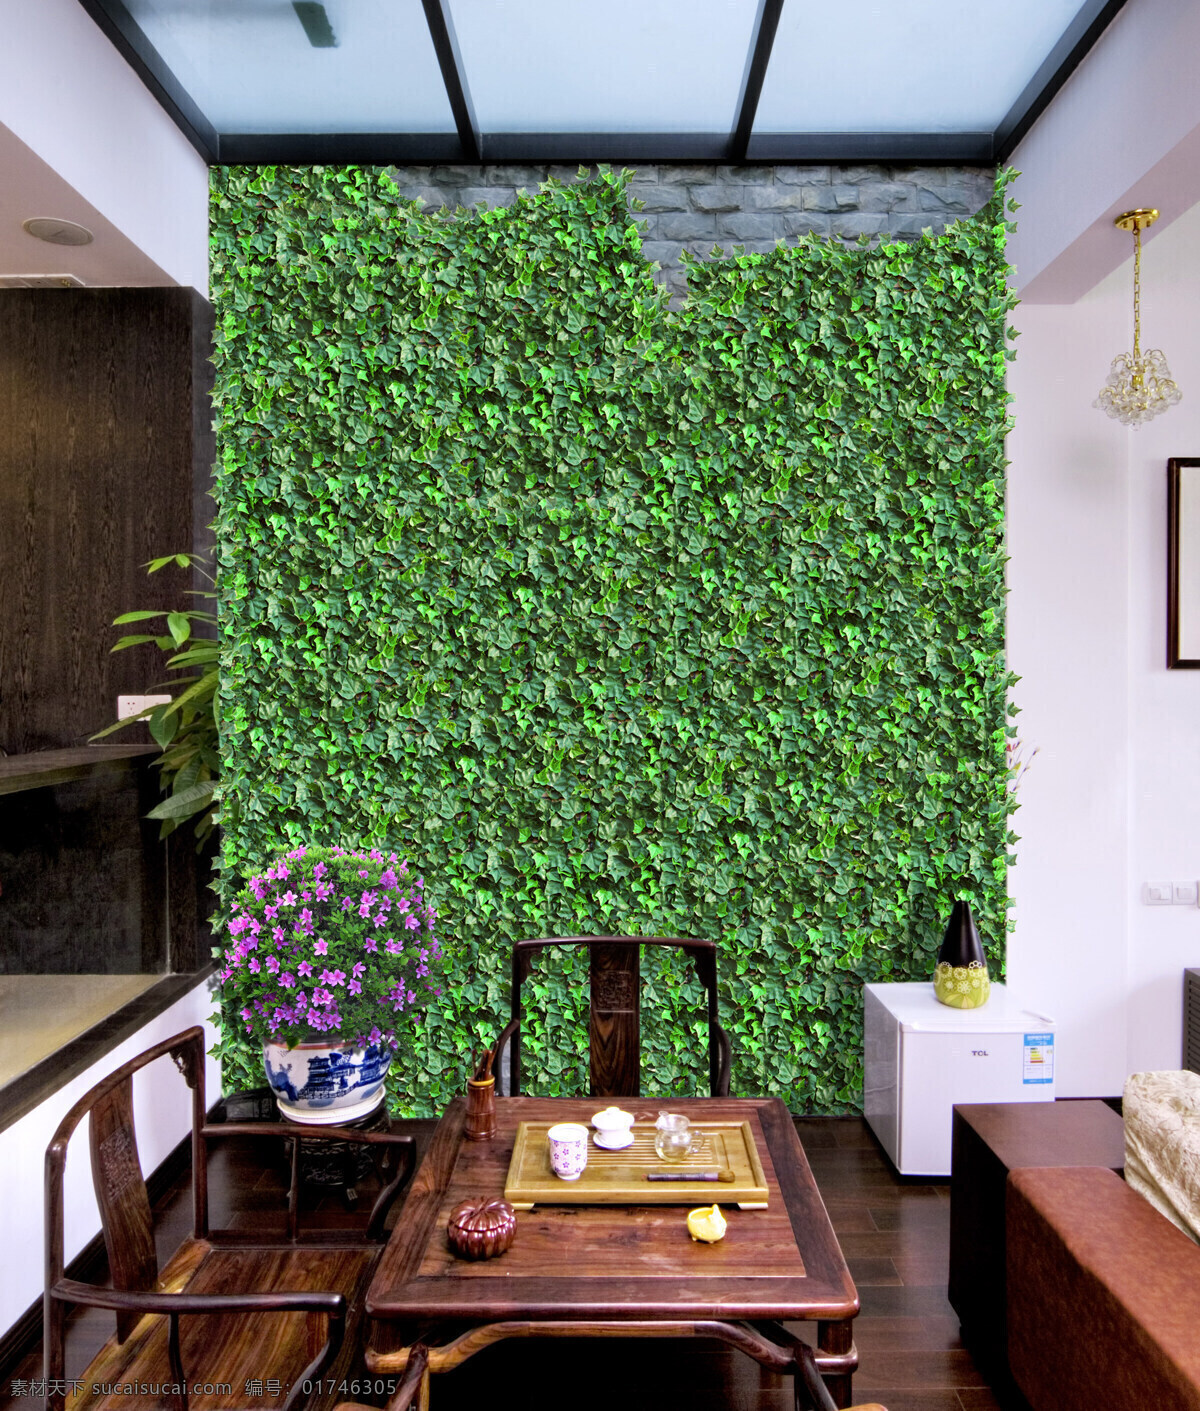 背景 墙 背景墙 餐厅 环境设计 墙面 室内设计 植物 装饰 植物背景墙 仿真植物 装饰素材